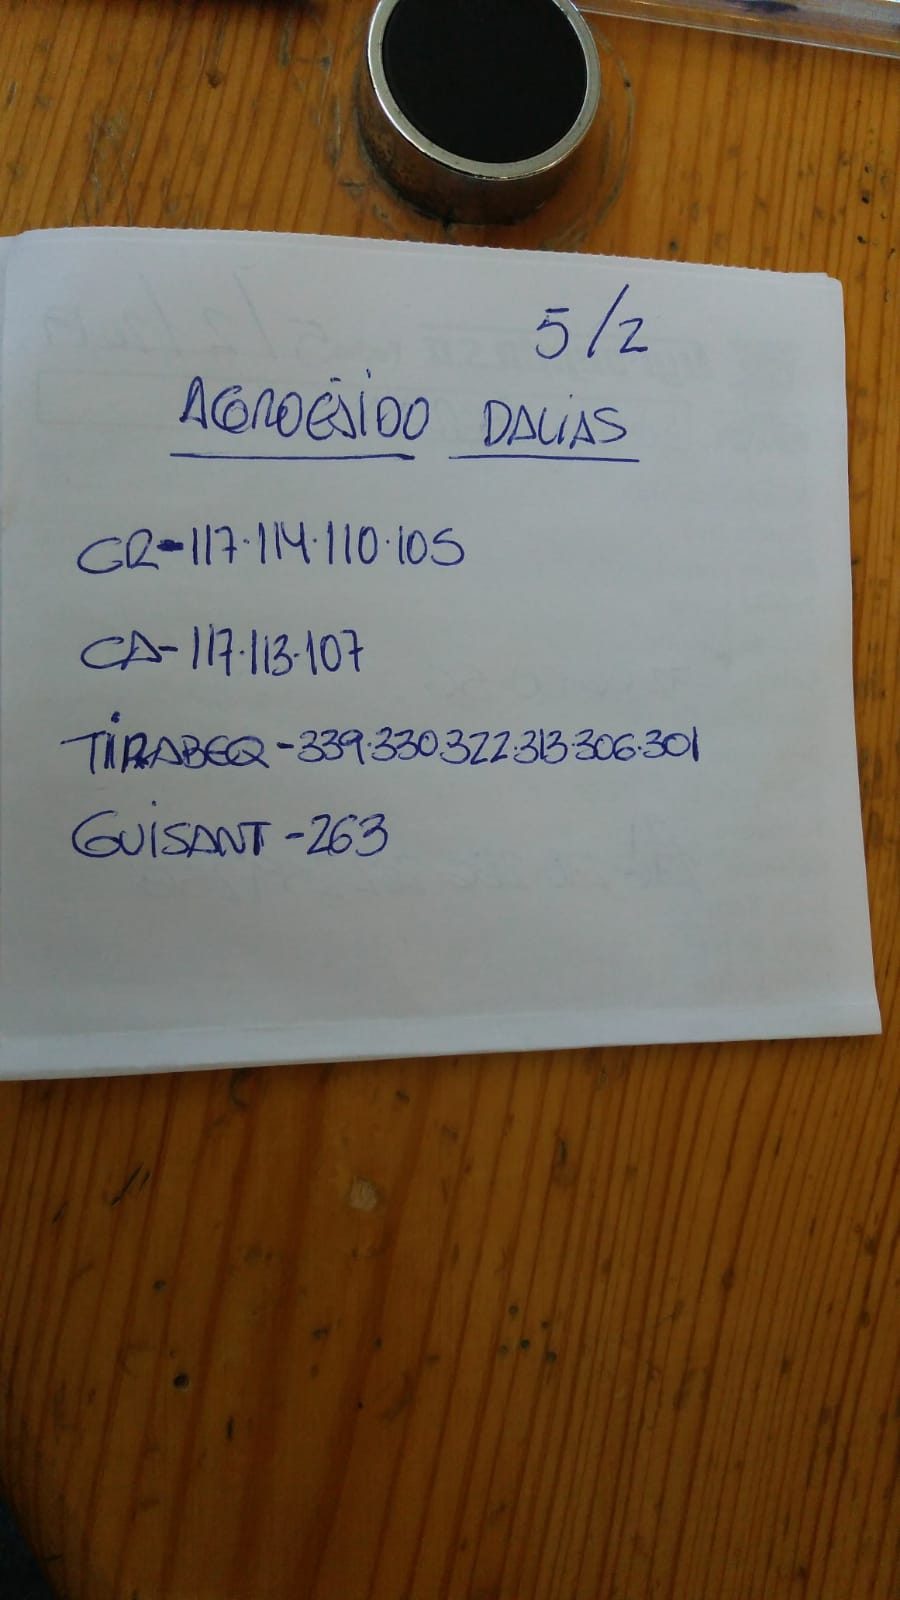 Subasta hortofrutícola AgroEjido Dalias 5 de Febrero 2019